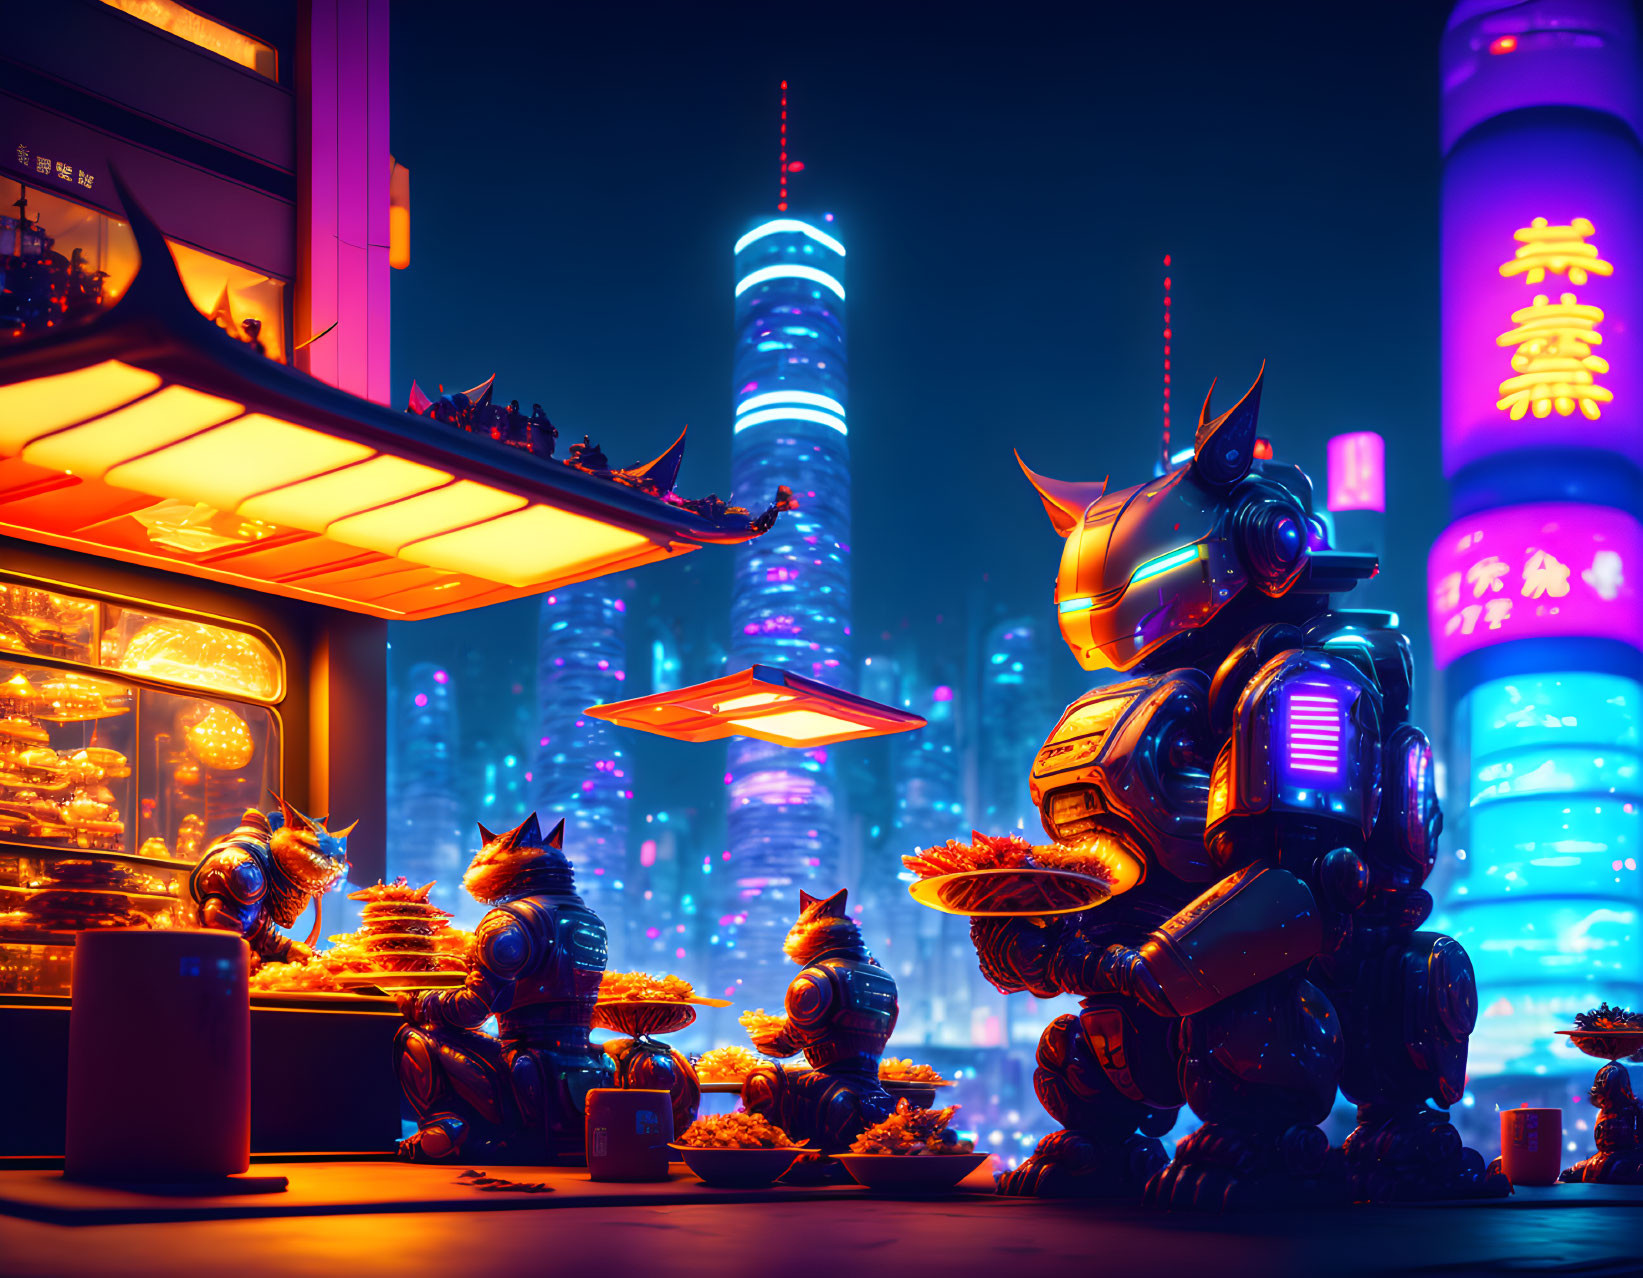 Robocats in a cyberpunk asian city